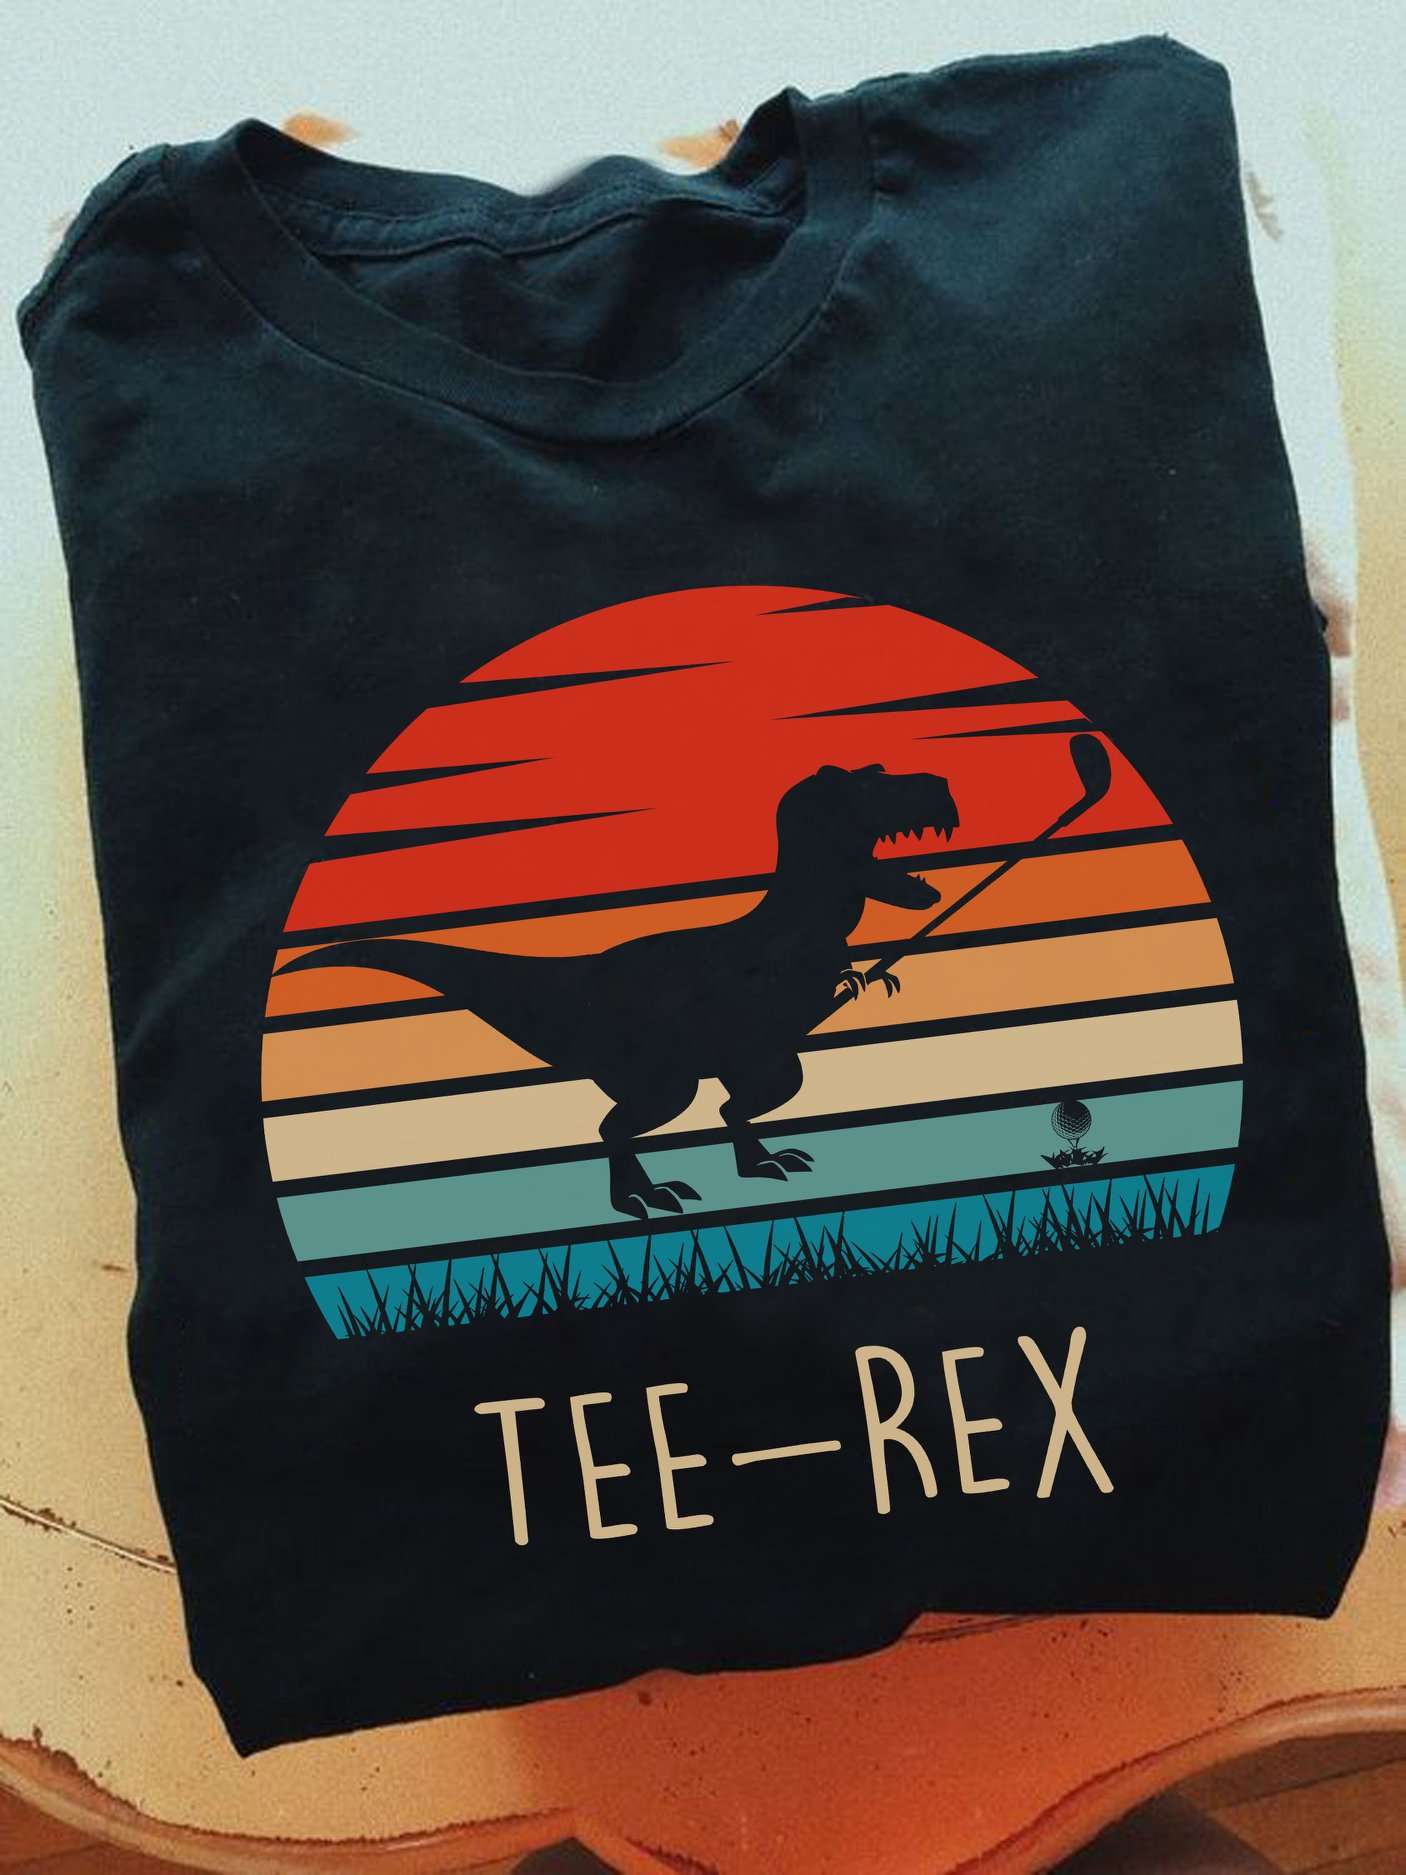 Tee-rex - T-rex playing golf, golf fancy sport